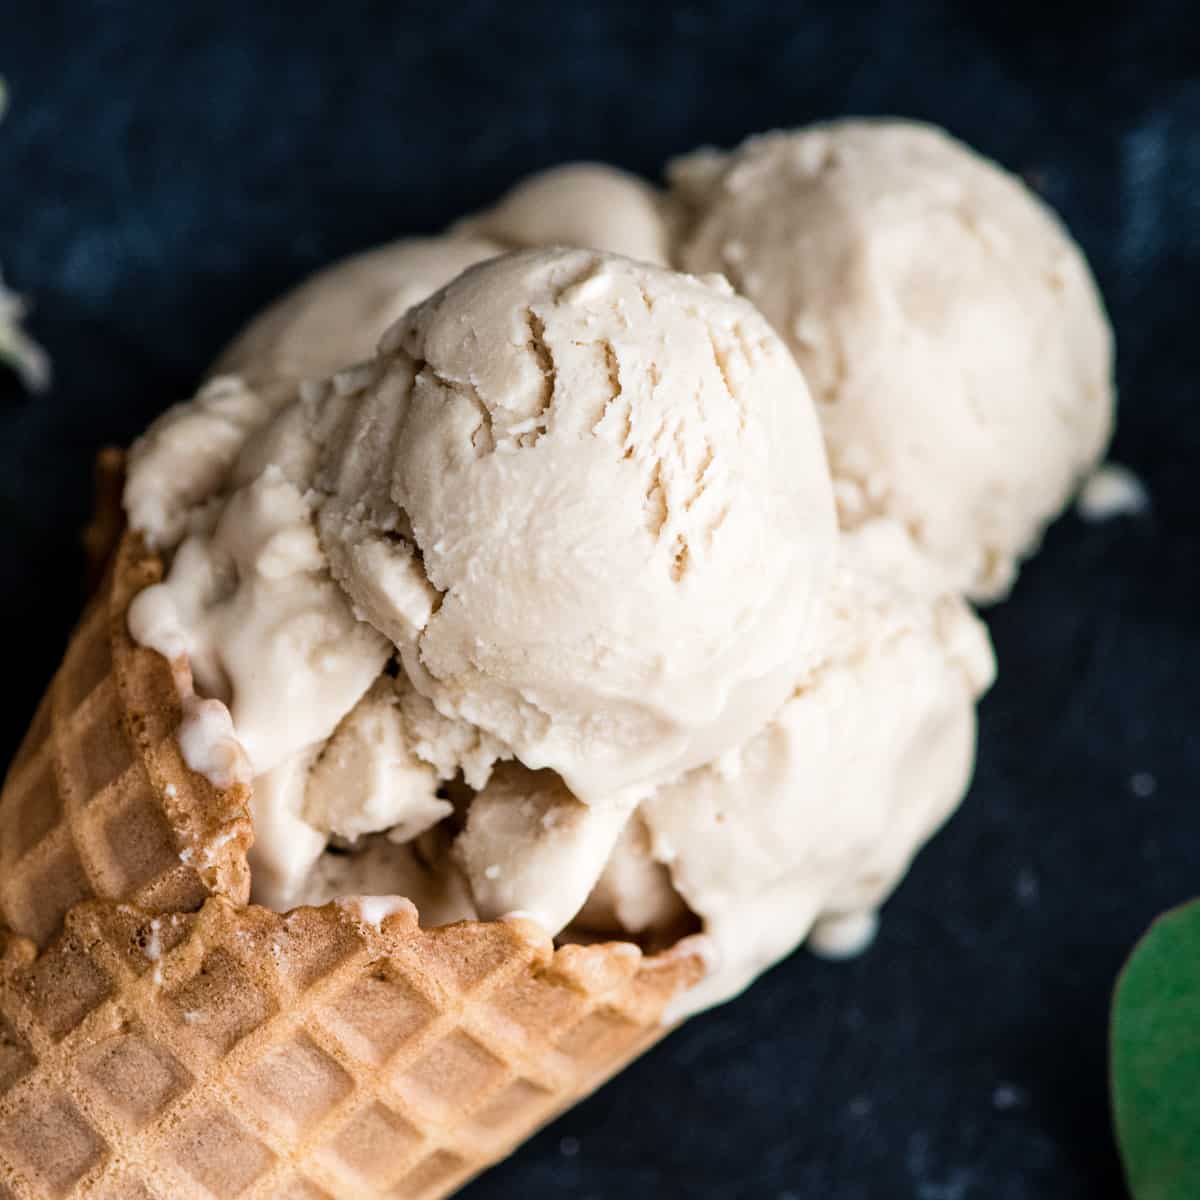 https://joyfoodsunshine.com/wp-content/uploads/2018/05/paleo-dairy-free-vanilla-ice-cream-recipe-12.jpg